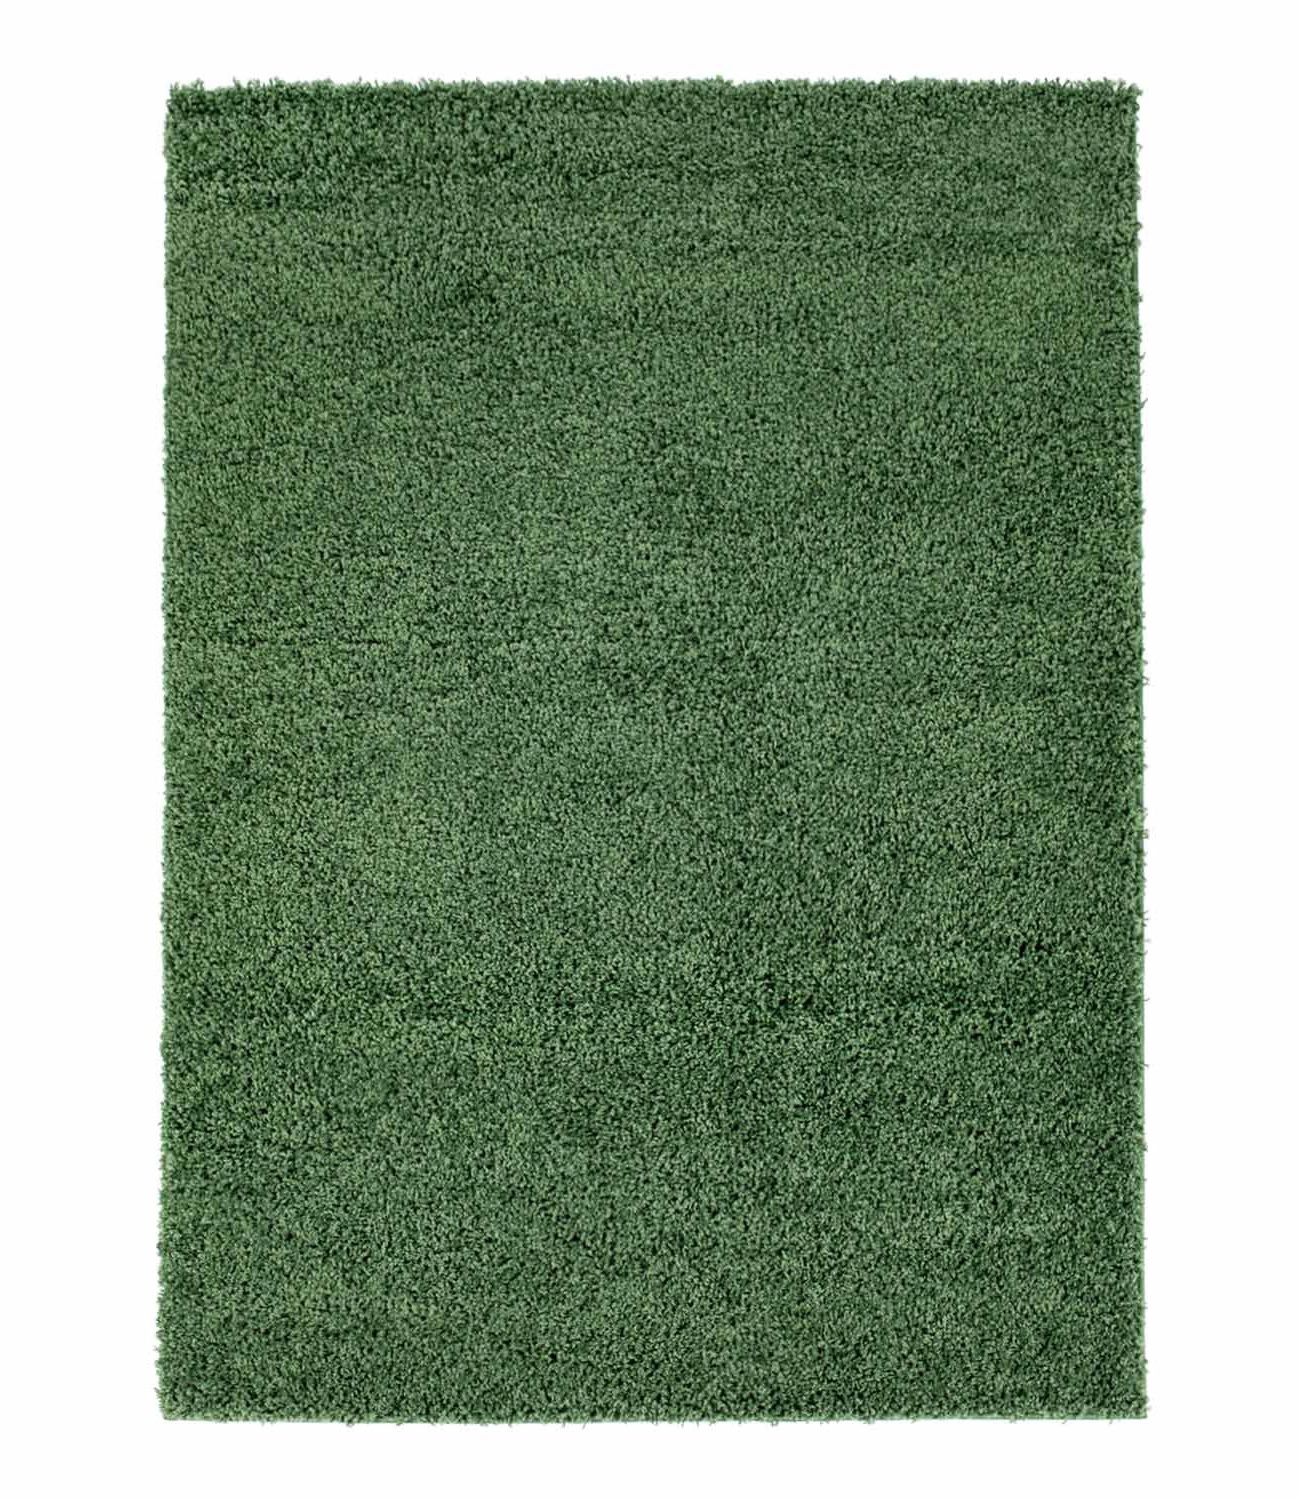 Trim hochflorteppich grün shaggy teppich rund hochflor wohnzimmer 60x120 cm 80x 150 cm 140x200 cm 160x230 cm 200x300 cm